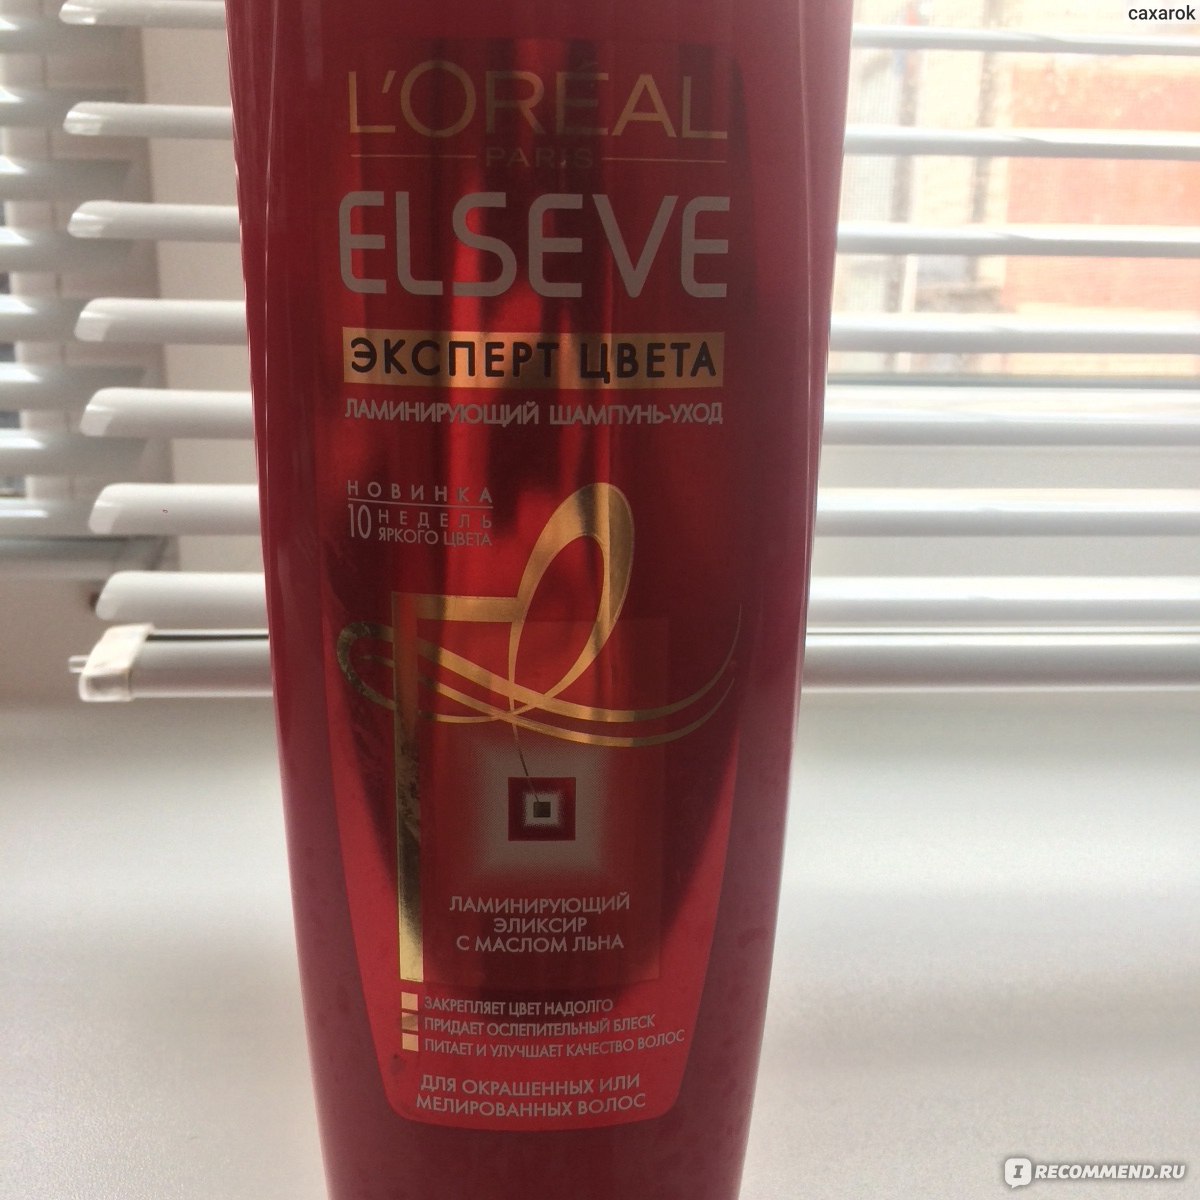 Маска для волос loreal elseve эксперт цвета с эффектом ламинирования